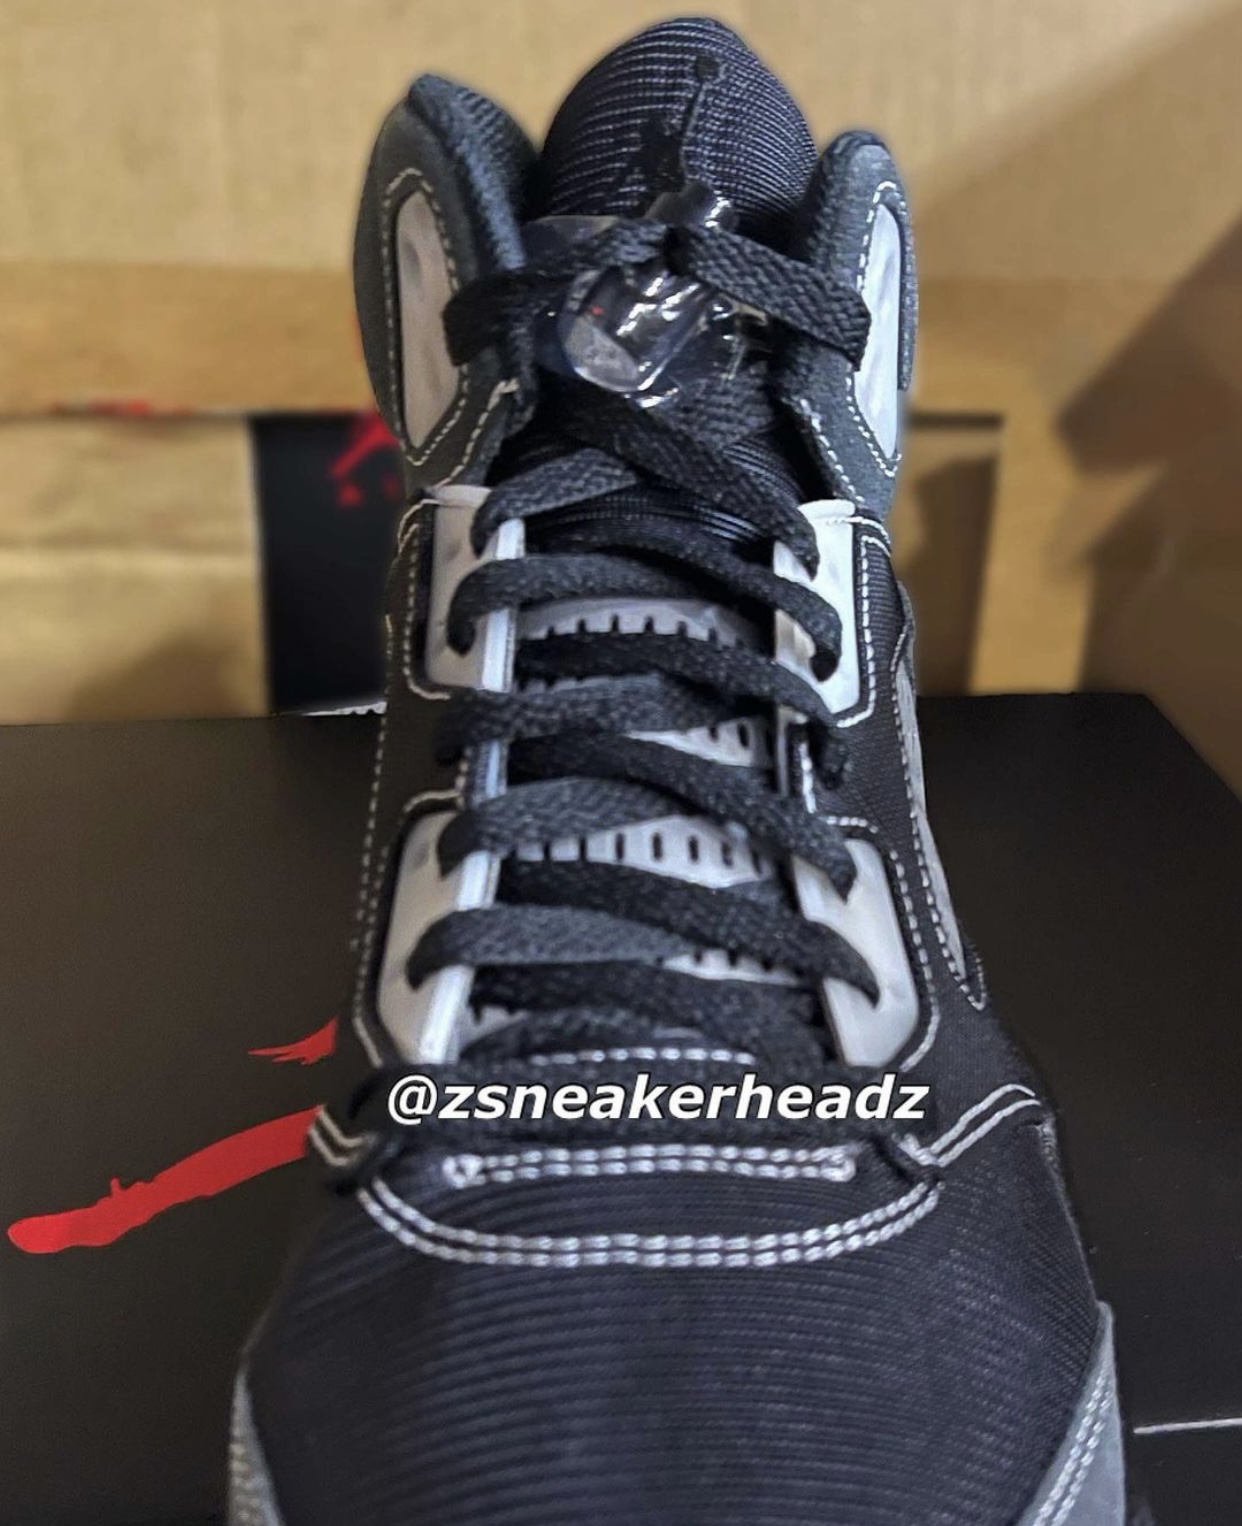 zsneakerheadz, NIKE, Jordan Brand, Jordan 5, Jordan, Black, Air Jordan 5, Air Jordan